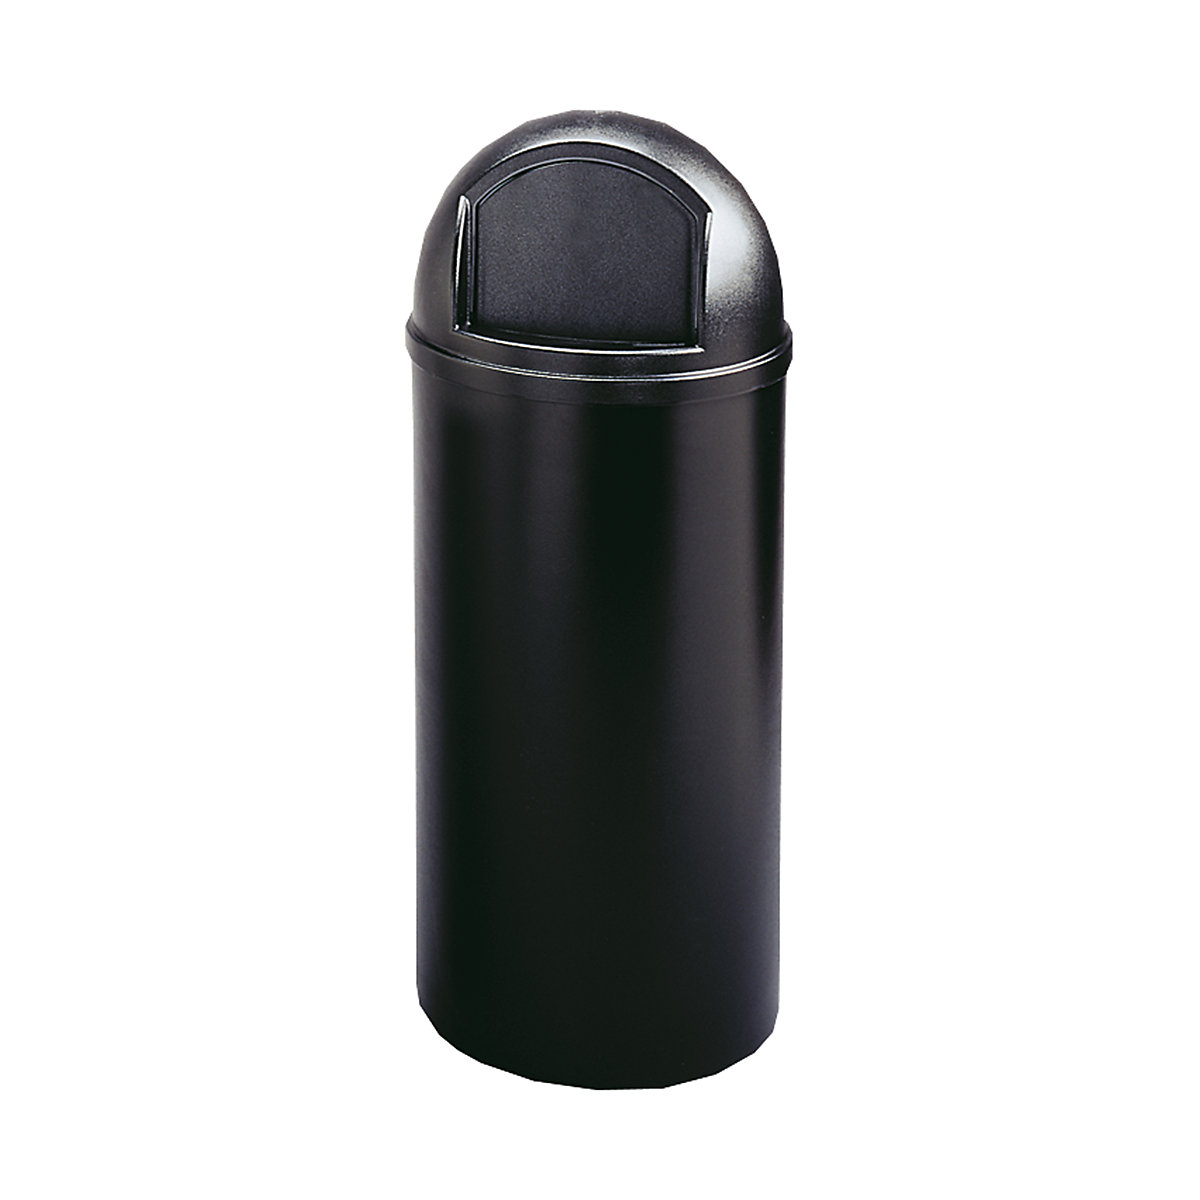 Protipožarna posoda za odpadke (PE) – Rubbermaid, prostornina 57 l, VxØ 930 x 390 mm, črna-2